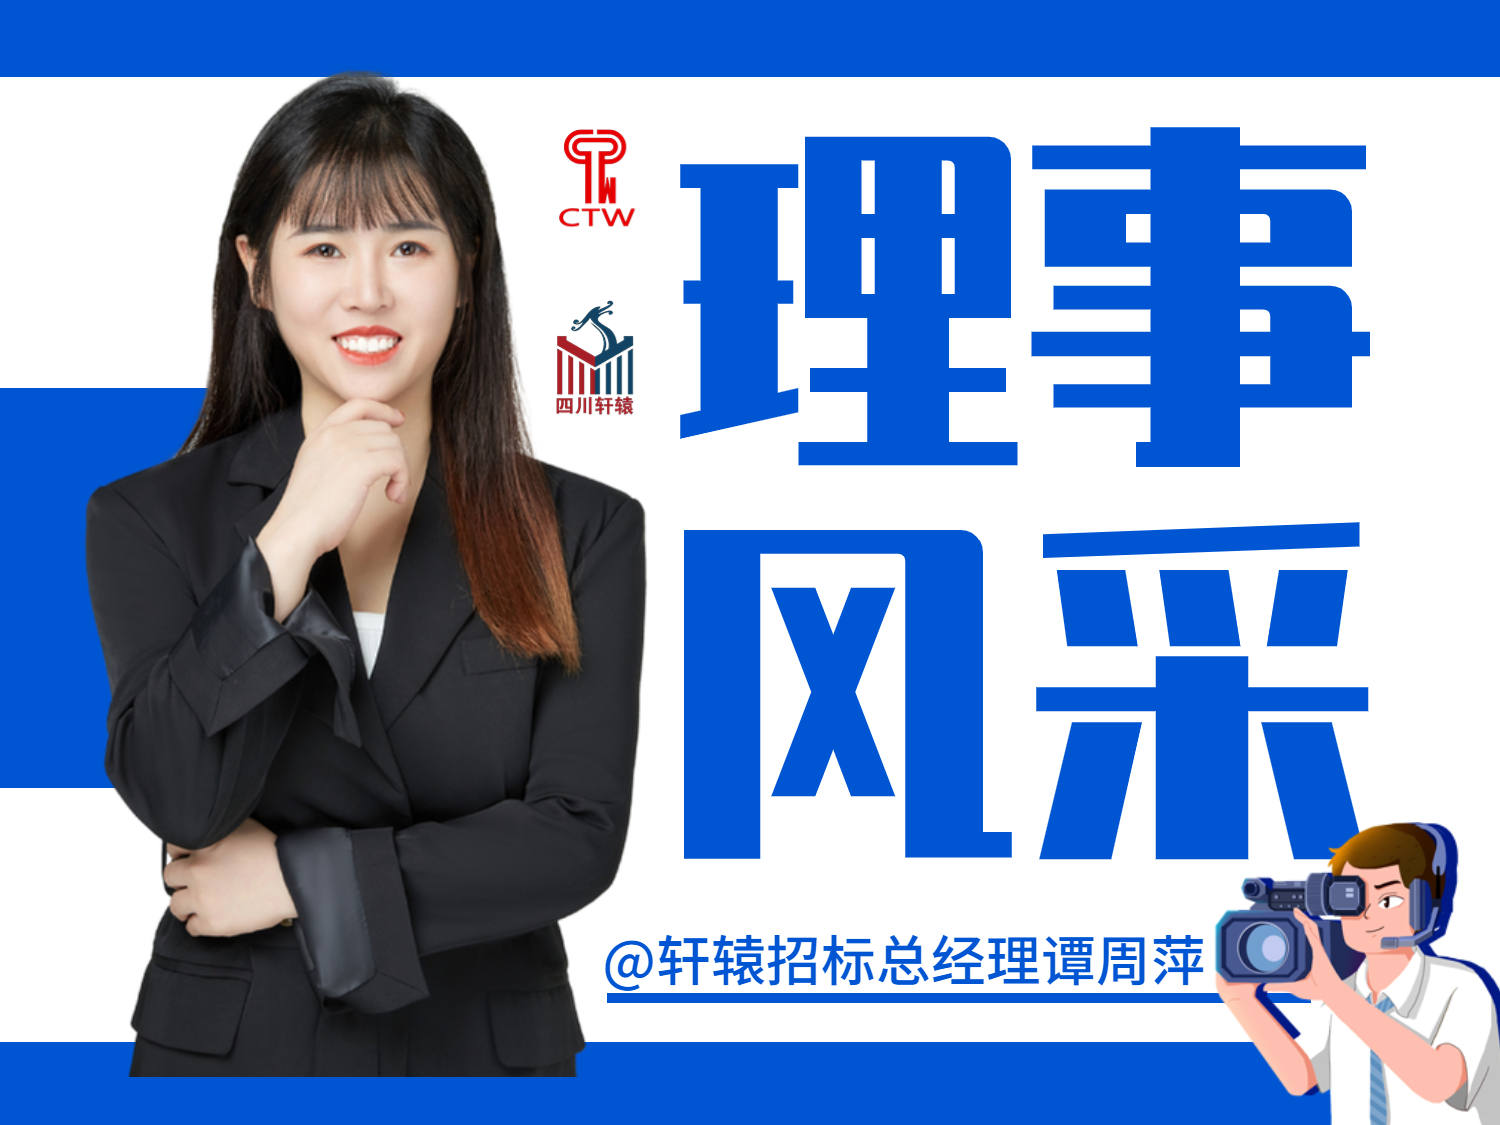 祝賀我公司總經理譚周萍女士接受中國招標雜志社專訪——求真務實、精益求精的內驅力